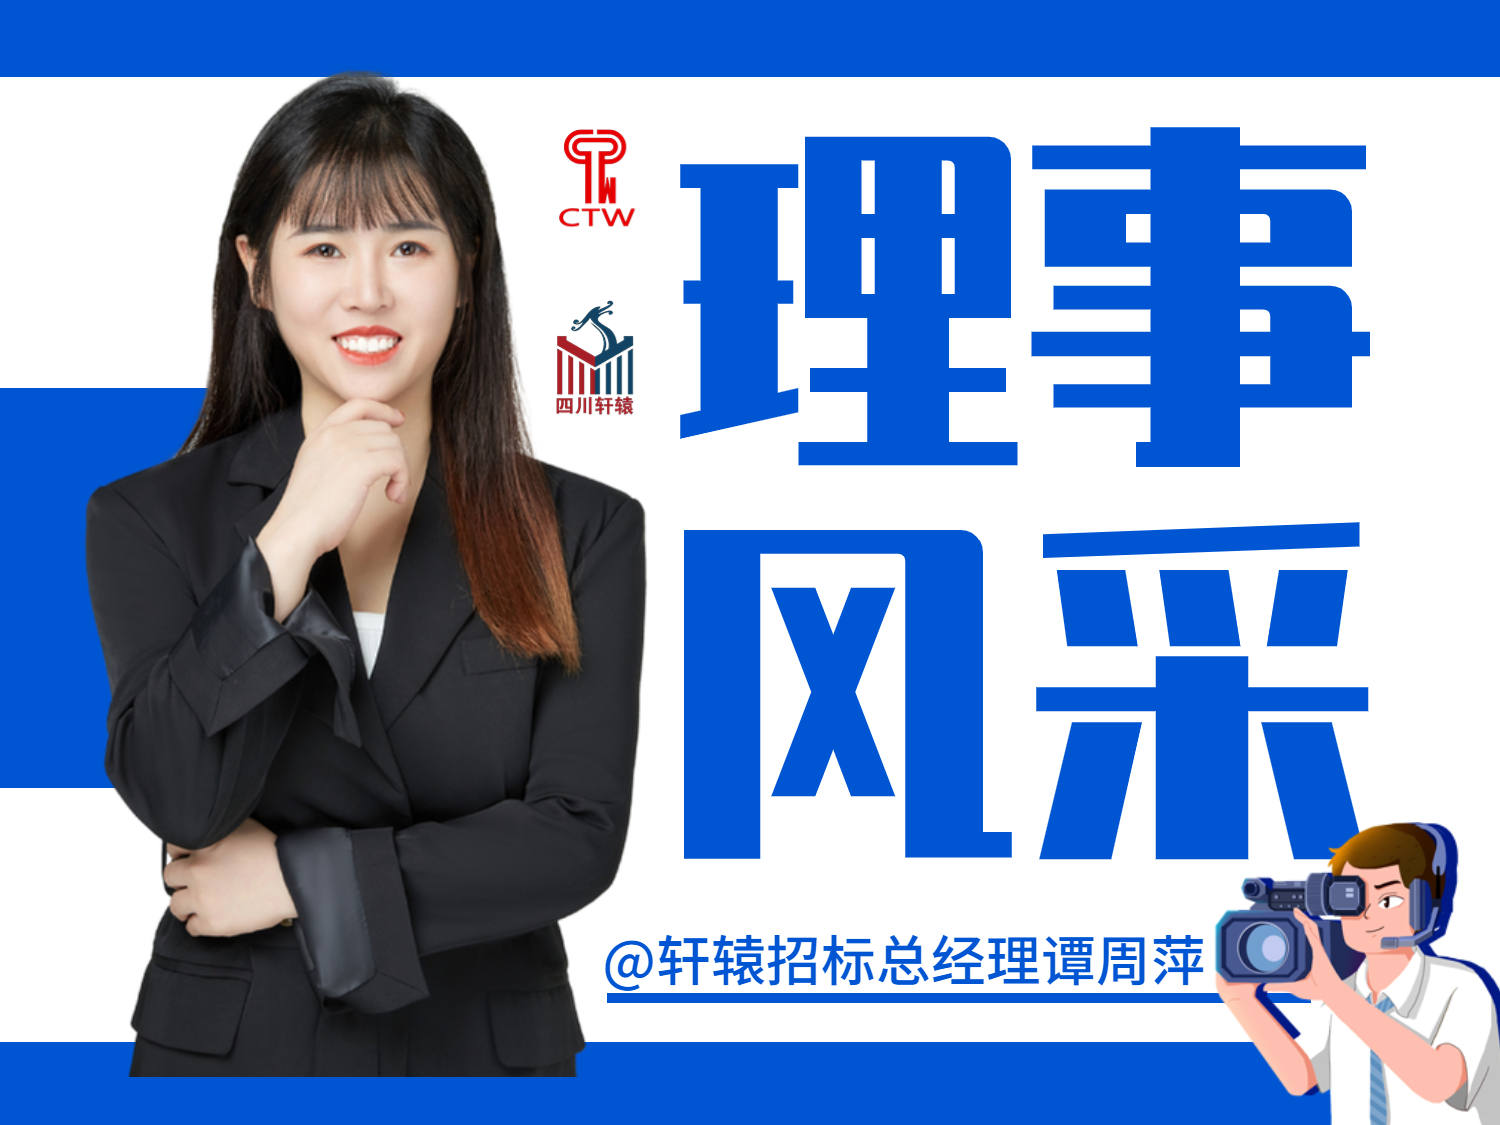 祝賀我公司總經理譚周萍女士接受中國招標雜志社專訪——求真務實、精益求精的內驅力